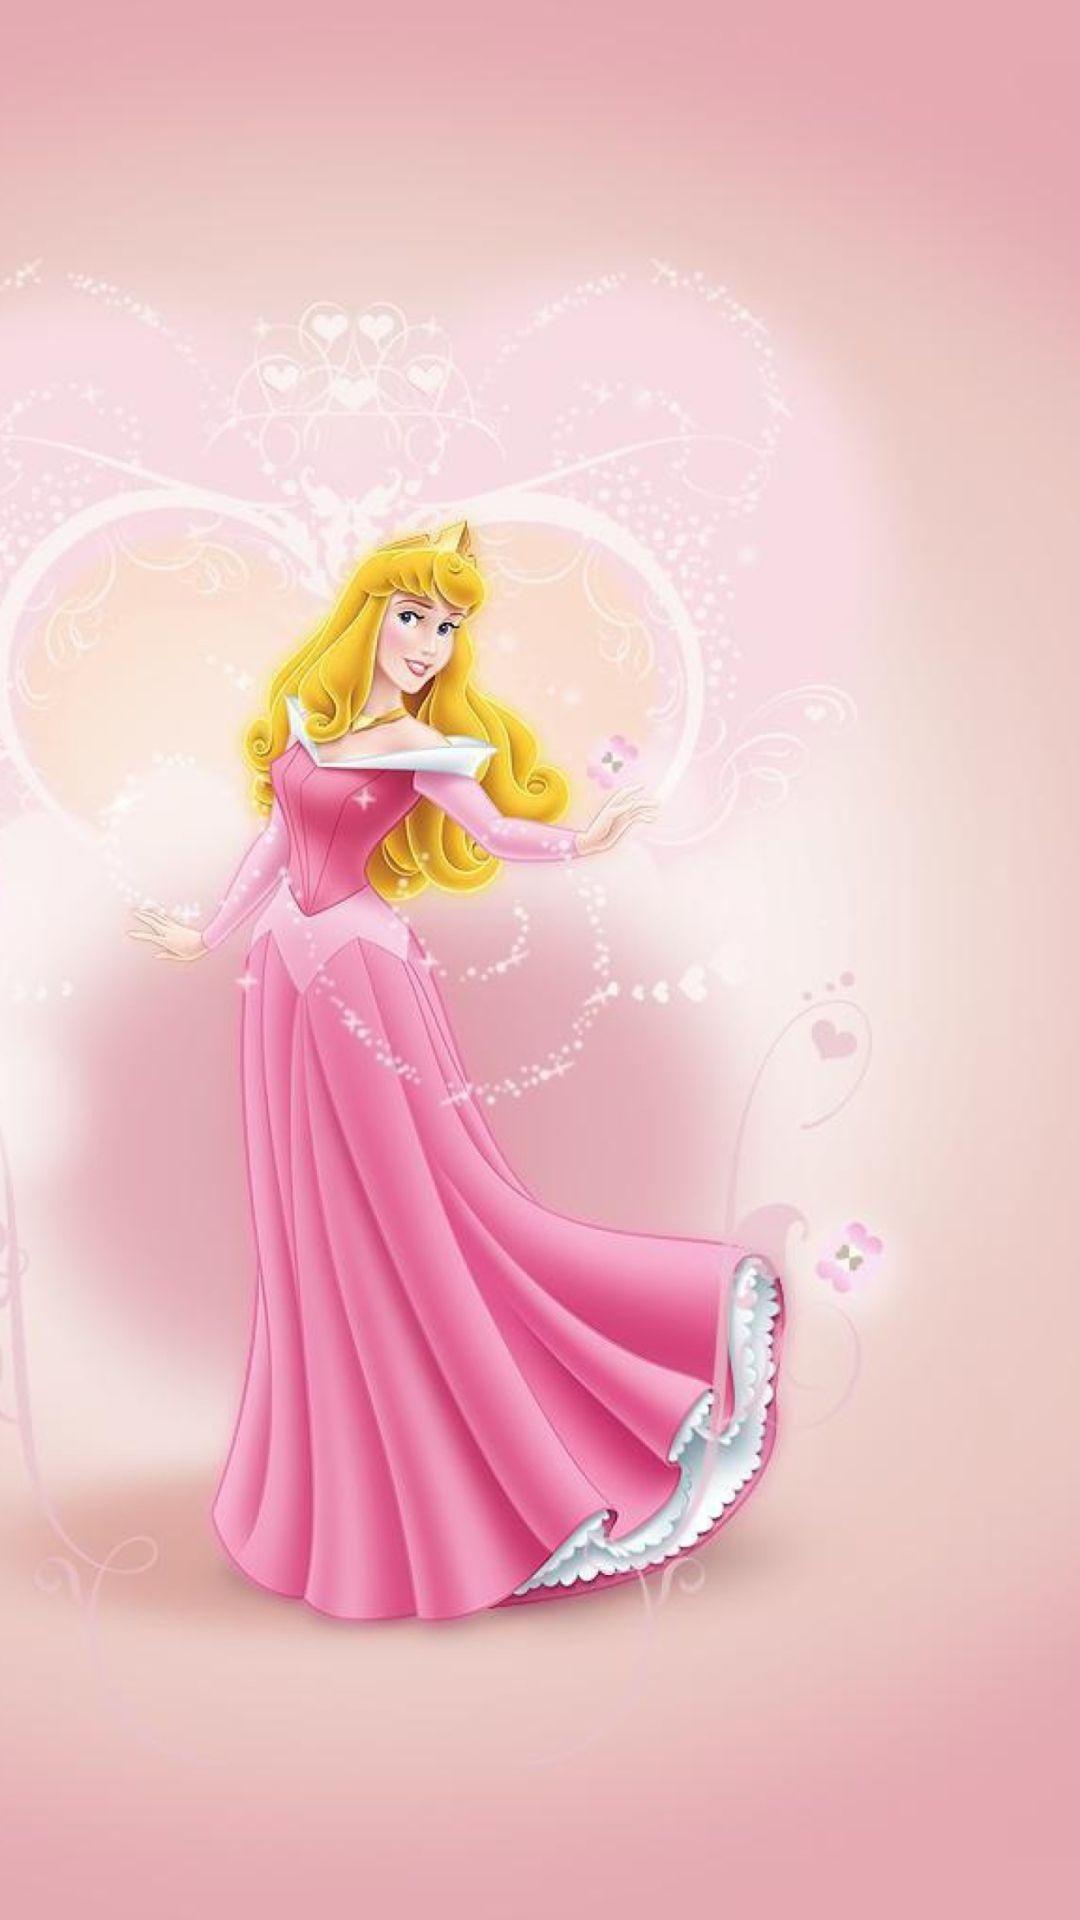 Disney Princesses Iphone Wallpapers Top Free Disney Princesses